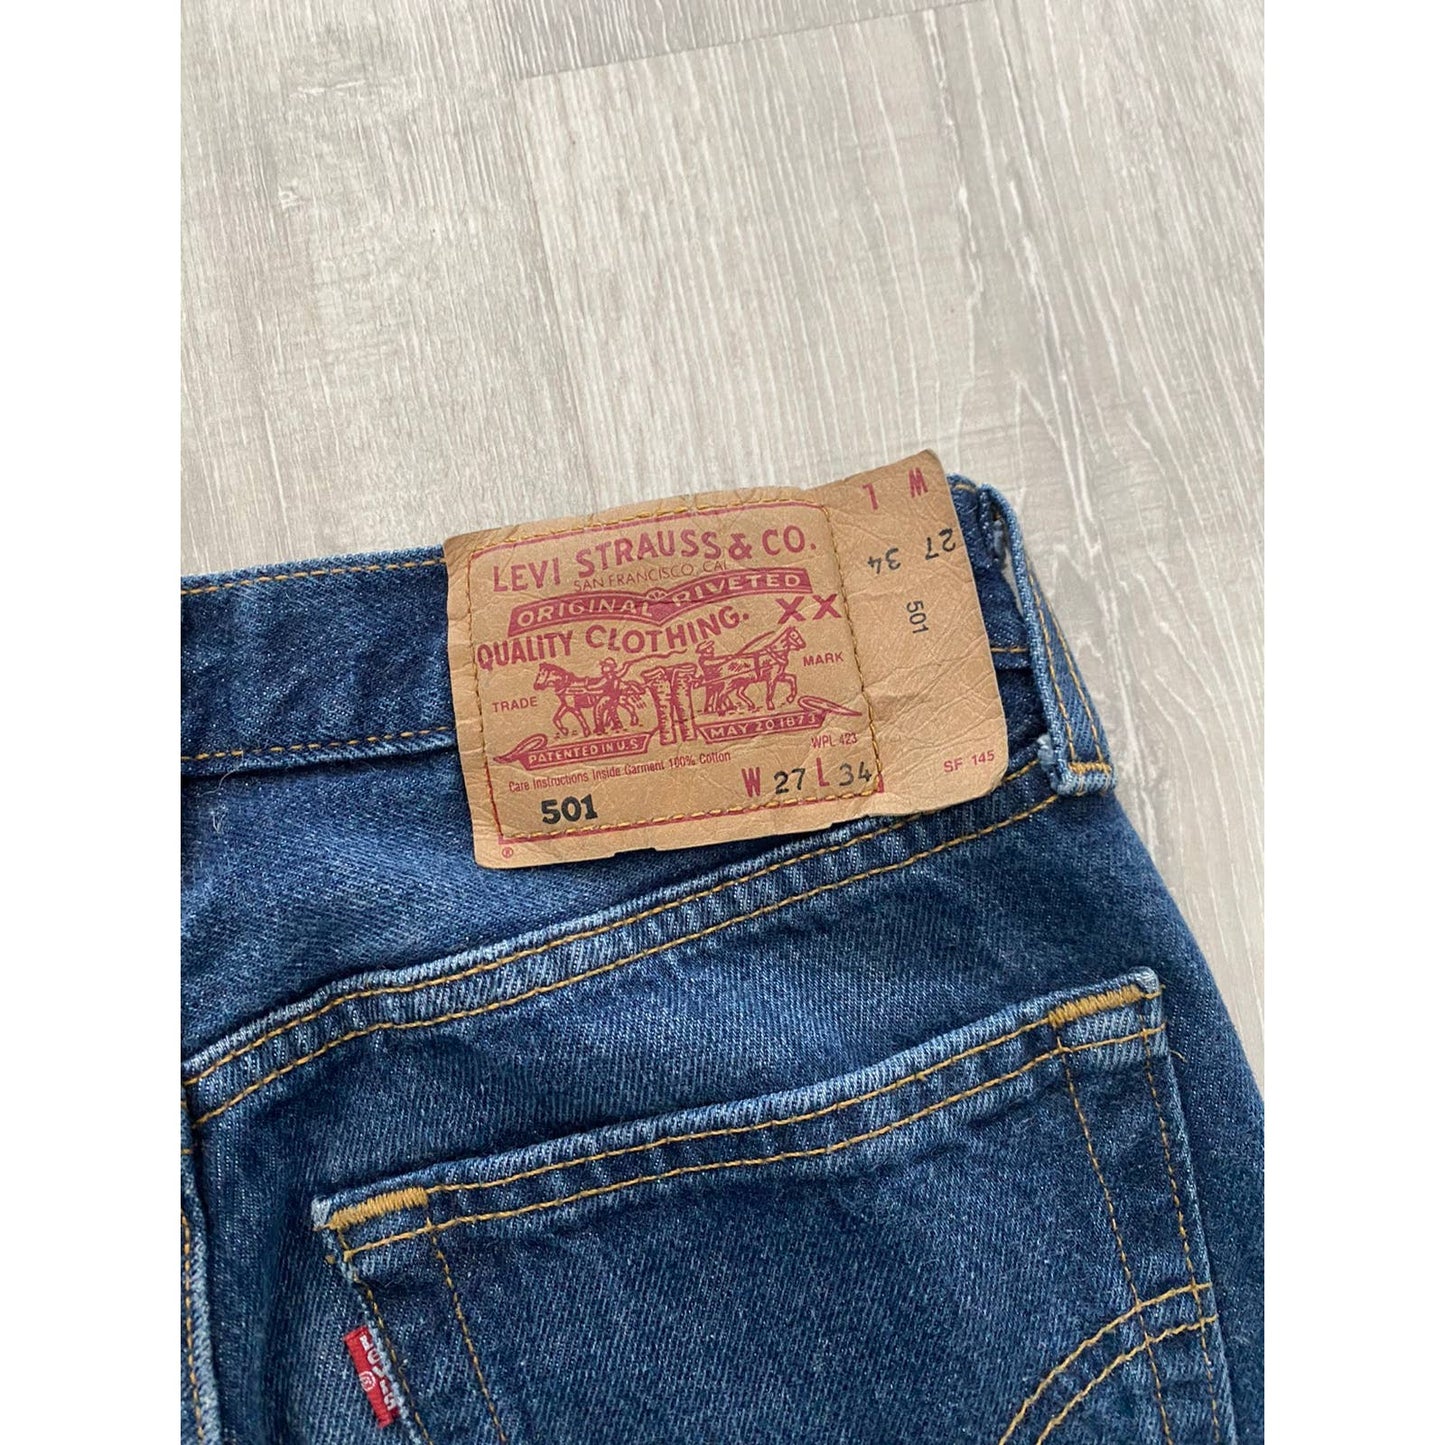 90s Levi’s 501 vintage blue jeans made in UK denim